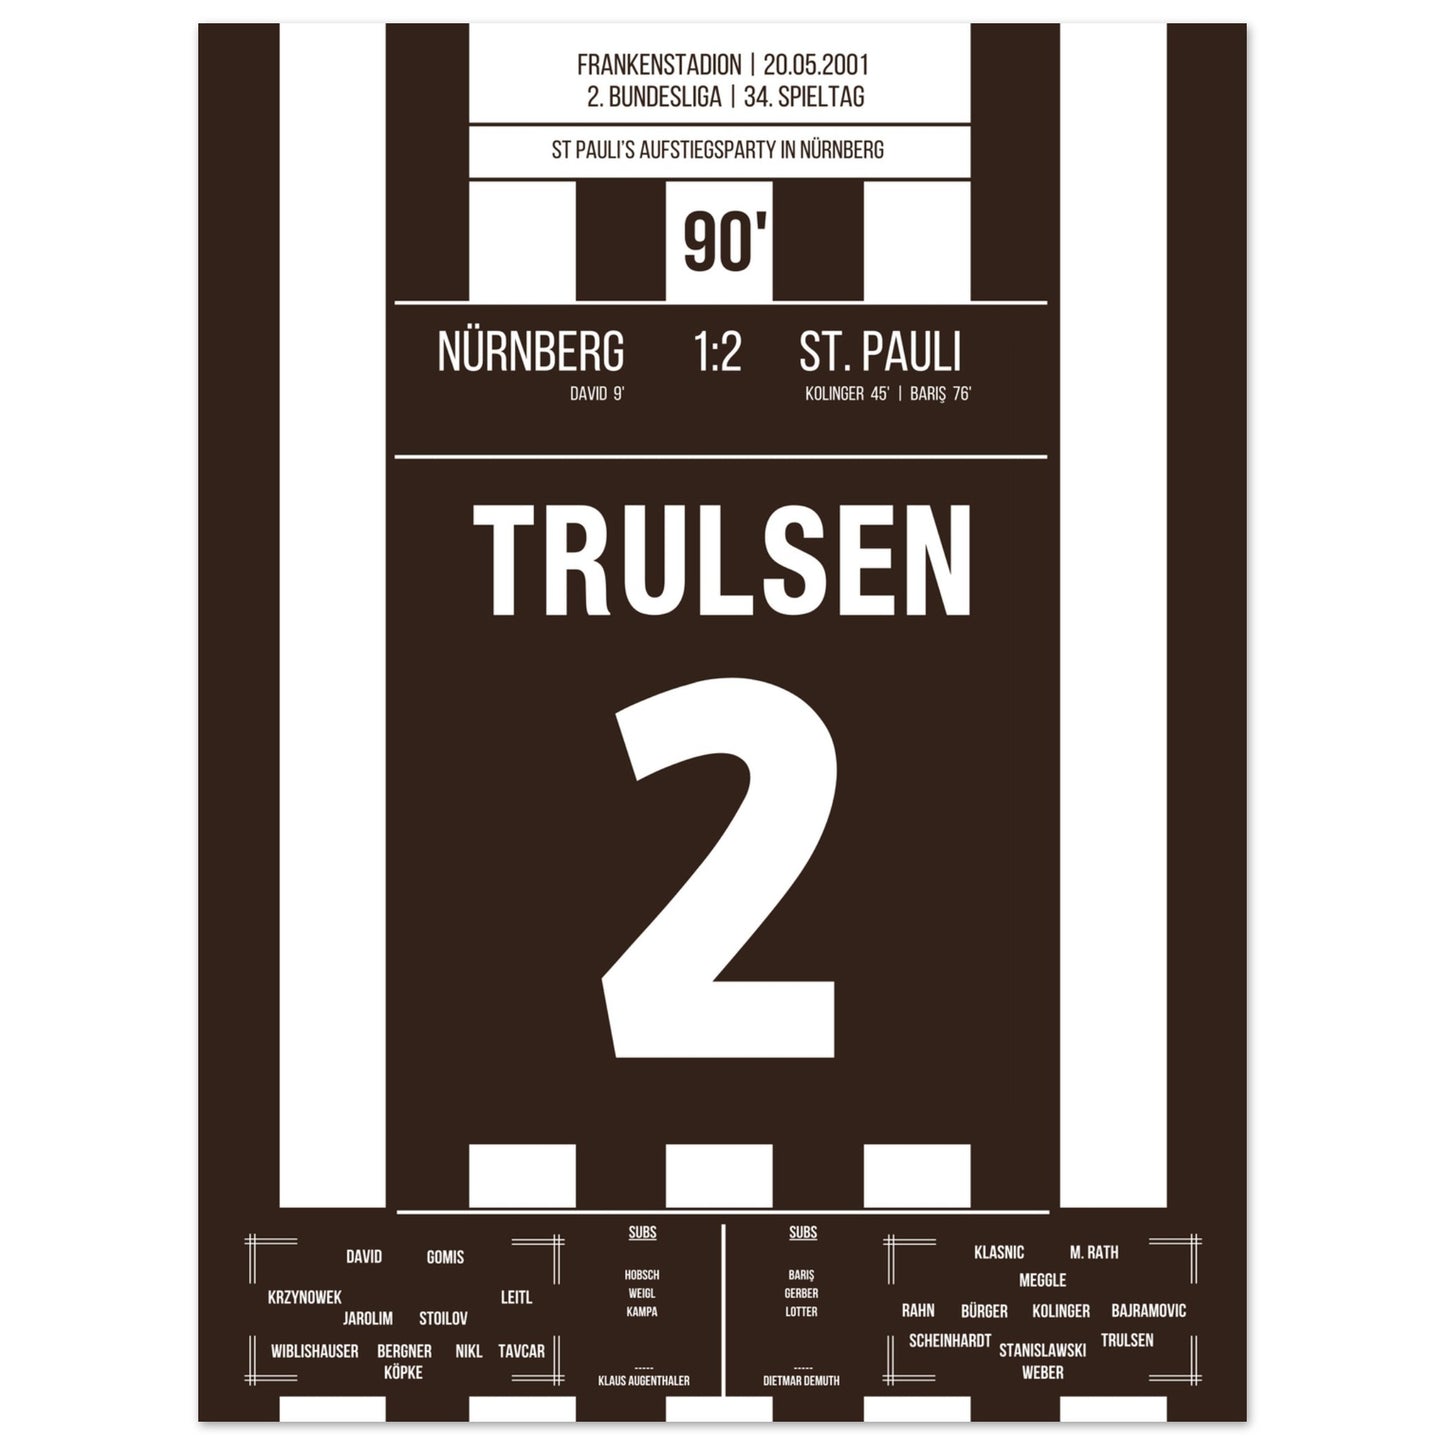 St Pauli's Aufstiegsfeier in Nürnberg 2001